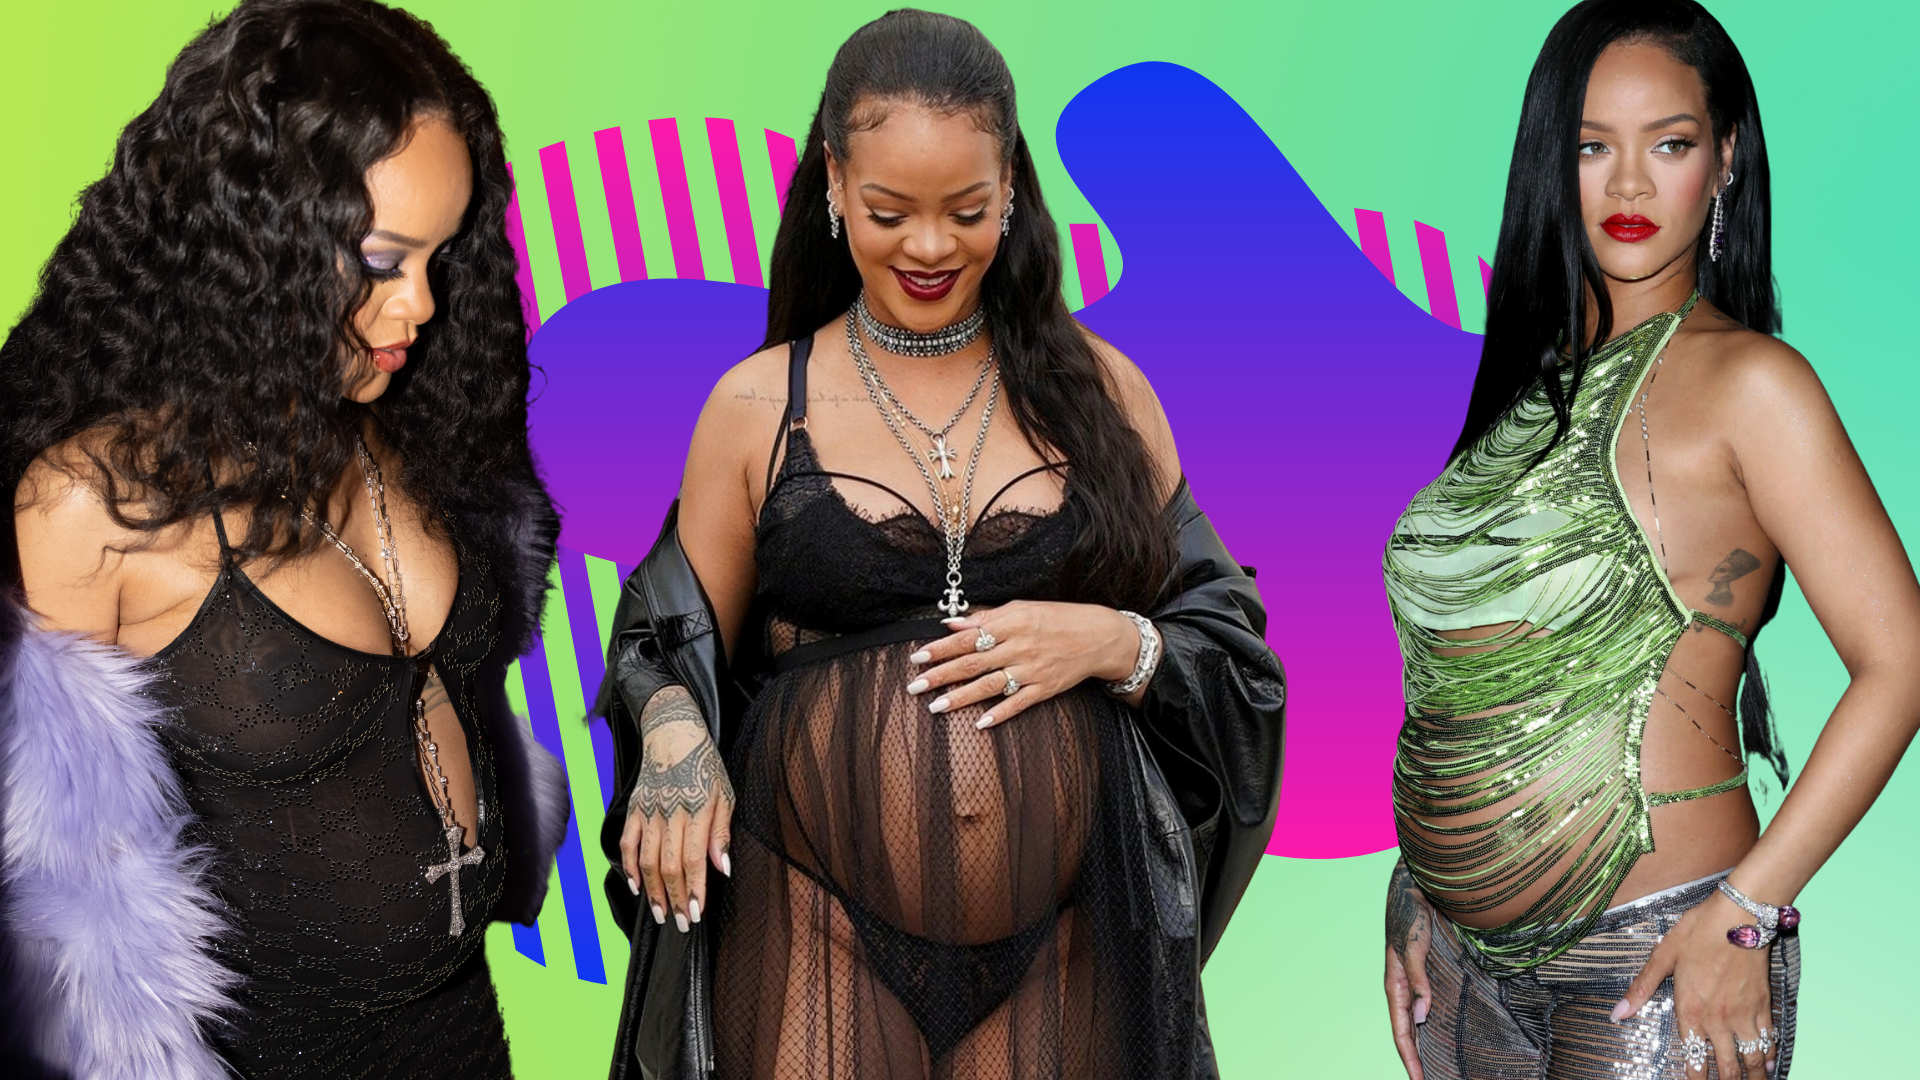 Kobiety w ciąży nie powinny się tak ubierać? Rihanna jest innego zdania  [ZDJĘCIA] | Ofeminin